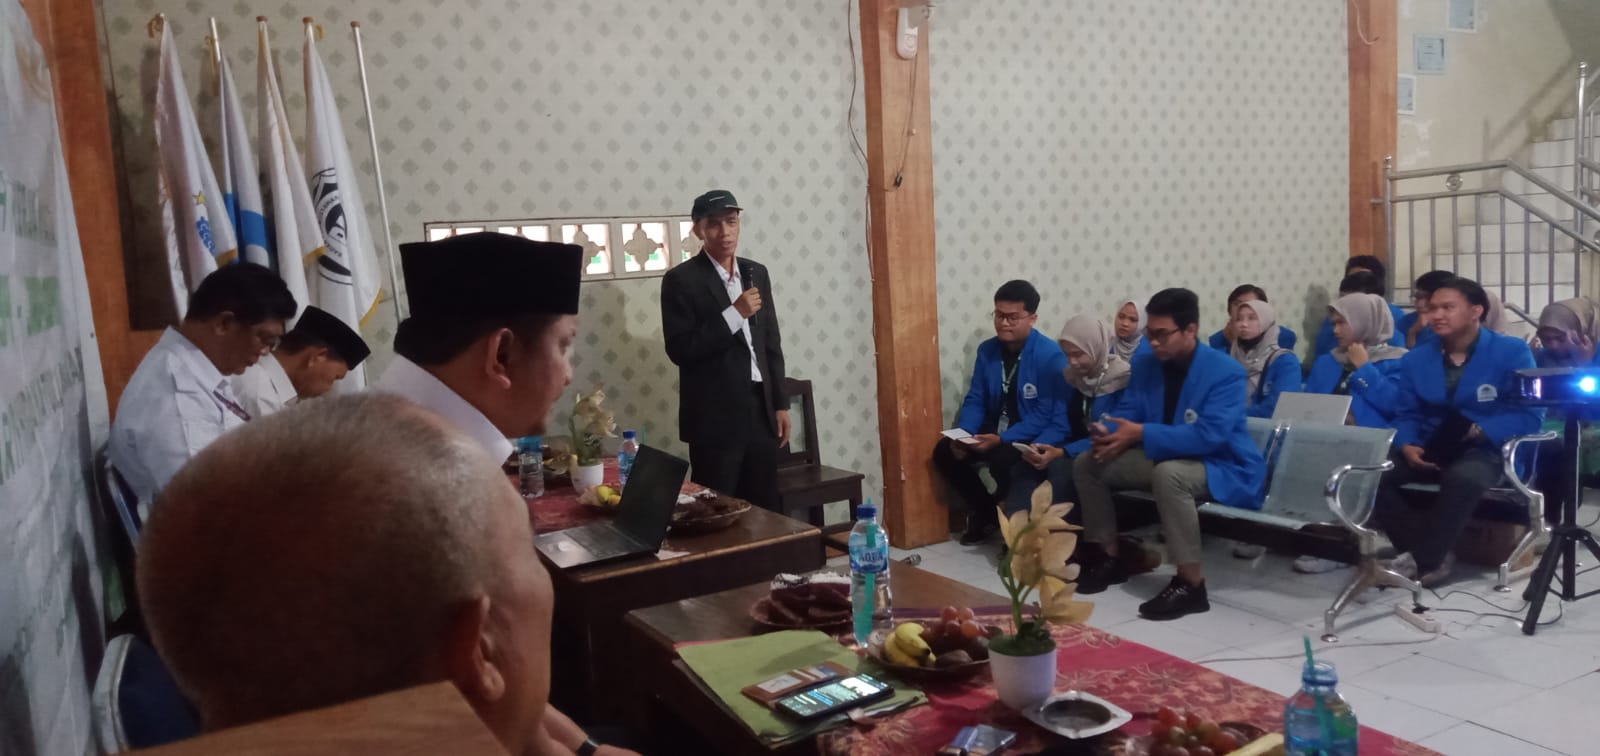 Kegiatan kunjungan Kuliah kerja Nyata (KKN) dari UIN Jakarta